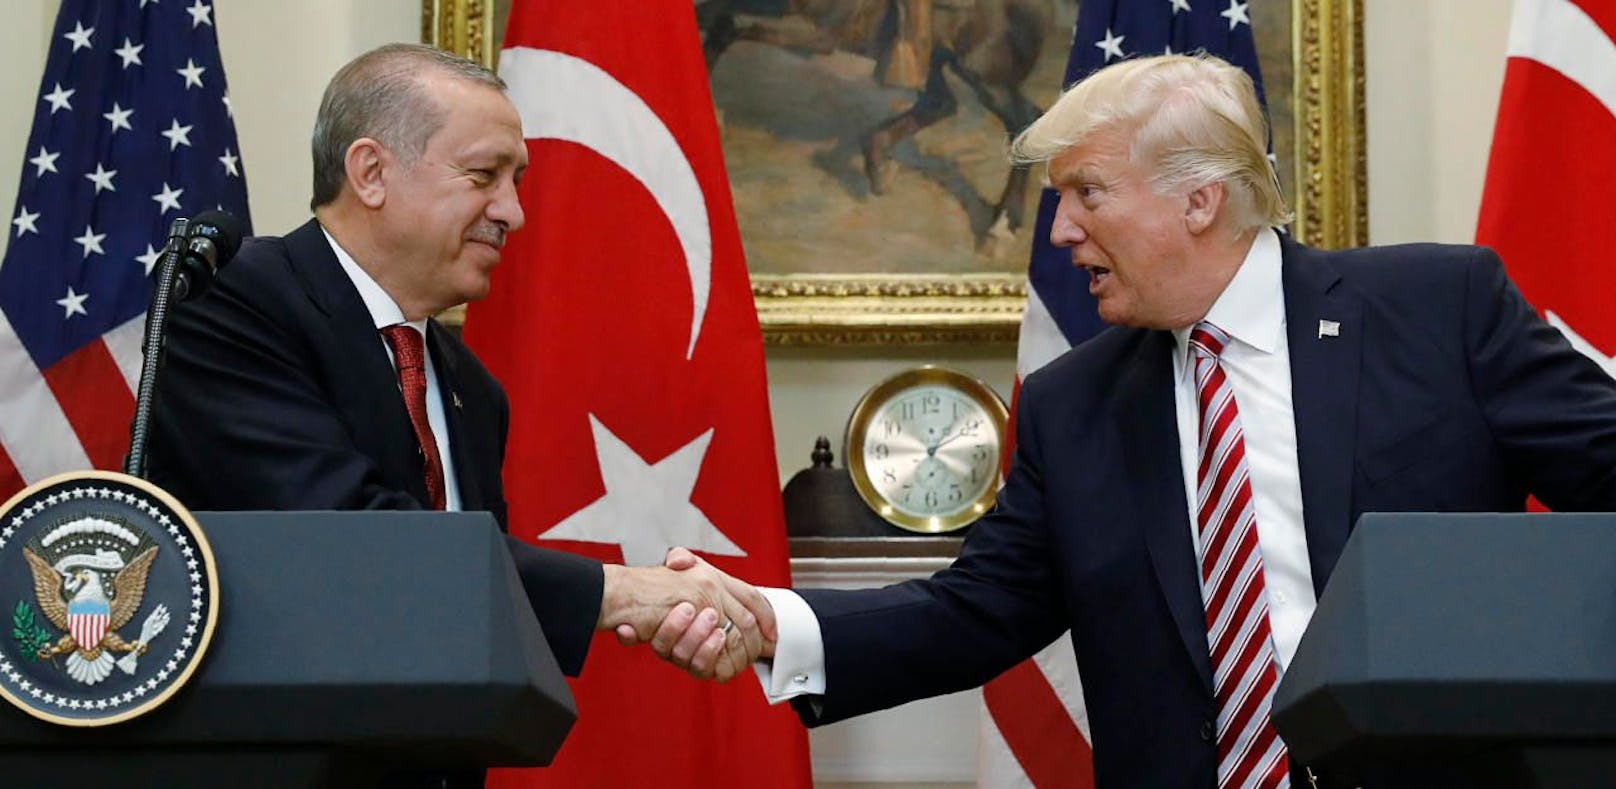 Das gab's für Merkel nicht: Handschlag zwischen Trump und Erdogan.